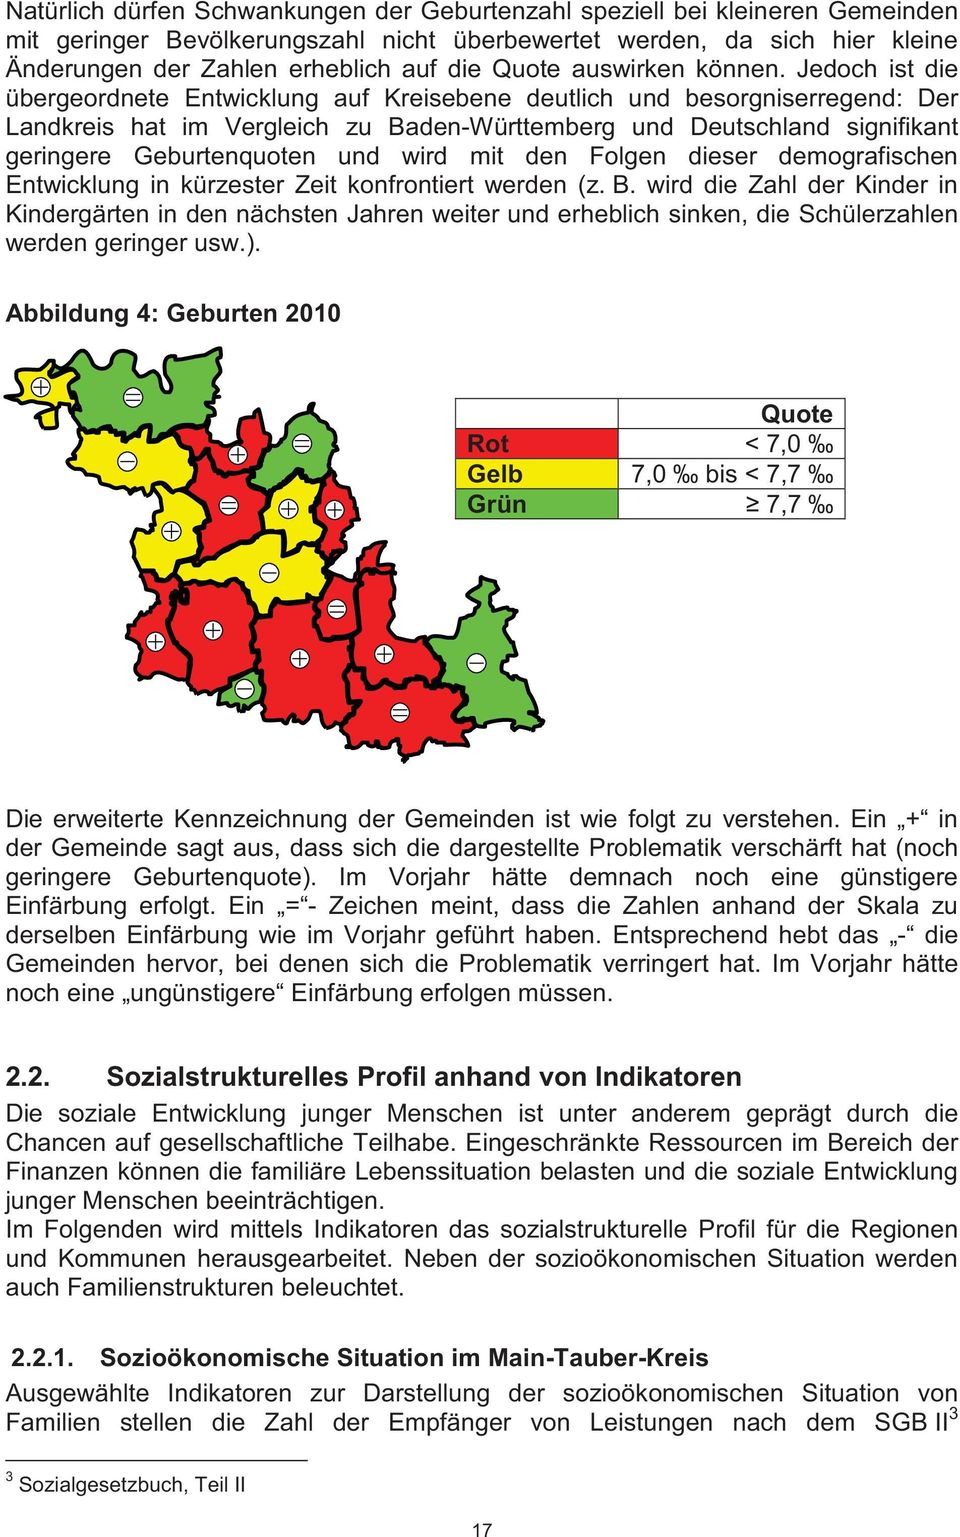 Jedoch ist die übergeordnete Entwicklung auf Kreisebene deutlich und besorgniserregend: Der Landkreis hat im Vergleich zu Baden-Württemberg und Deutschland signifikant geringere Geburtenquoten und